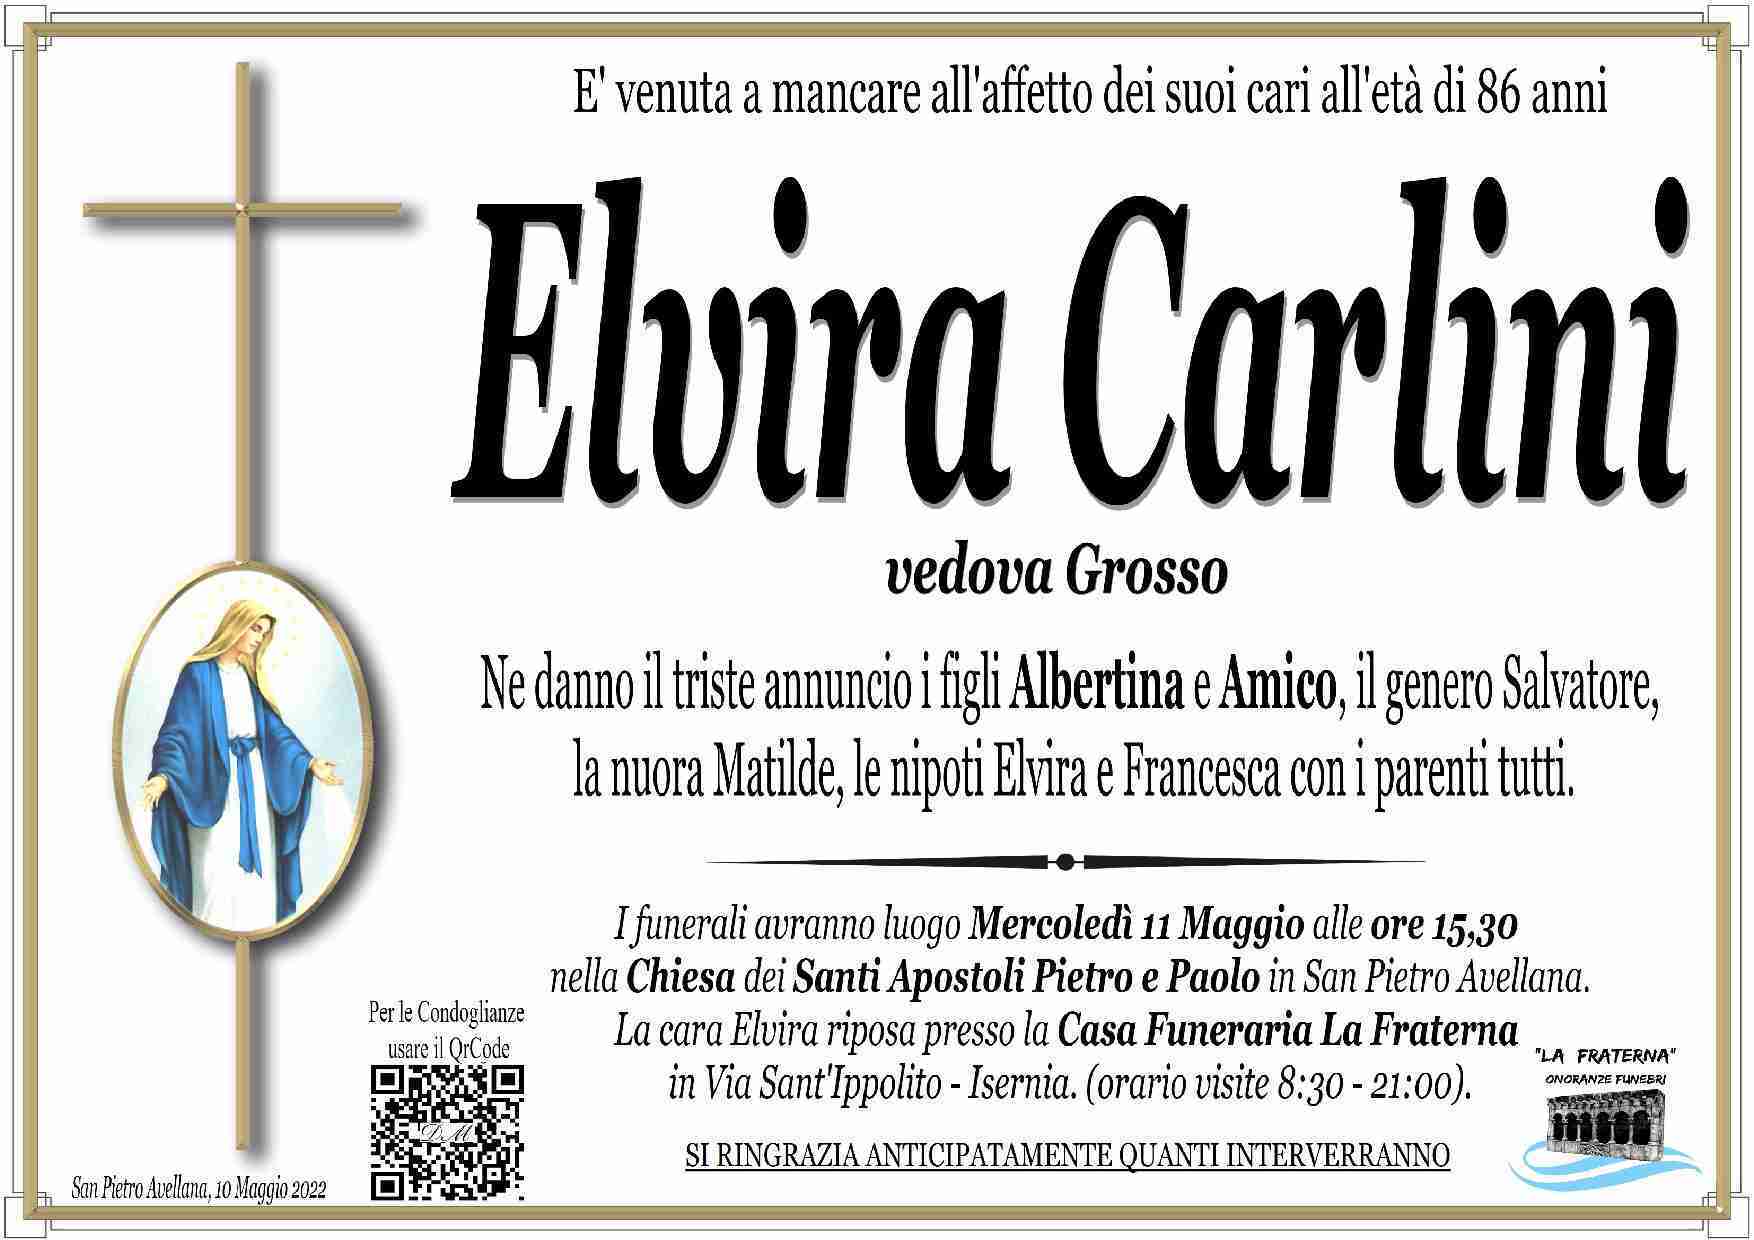 Elvira Carlini